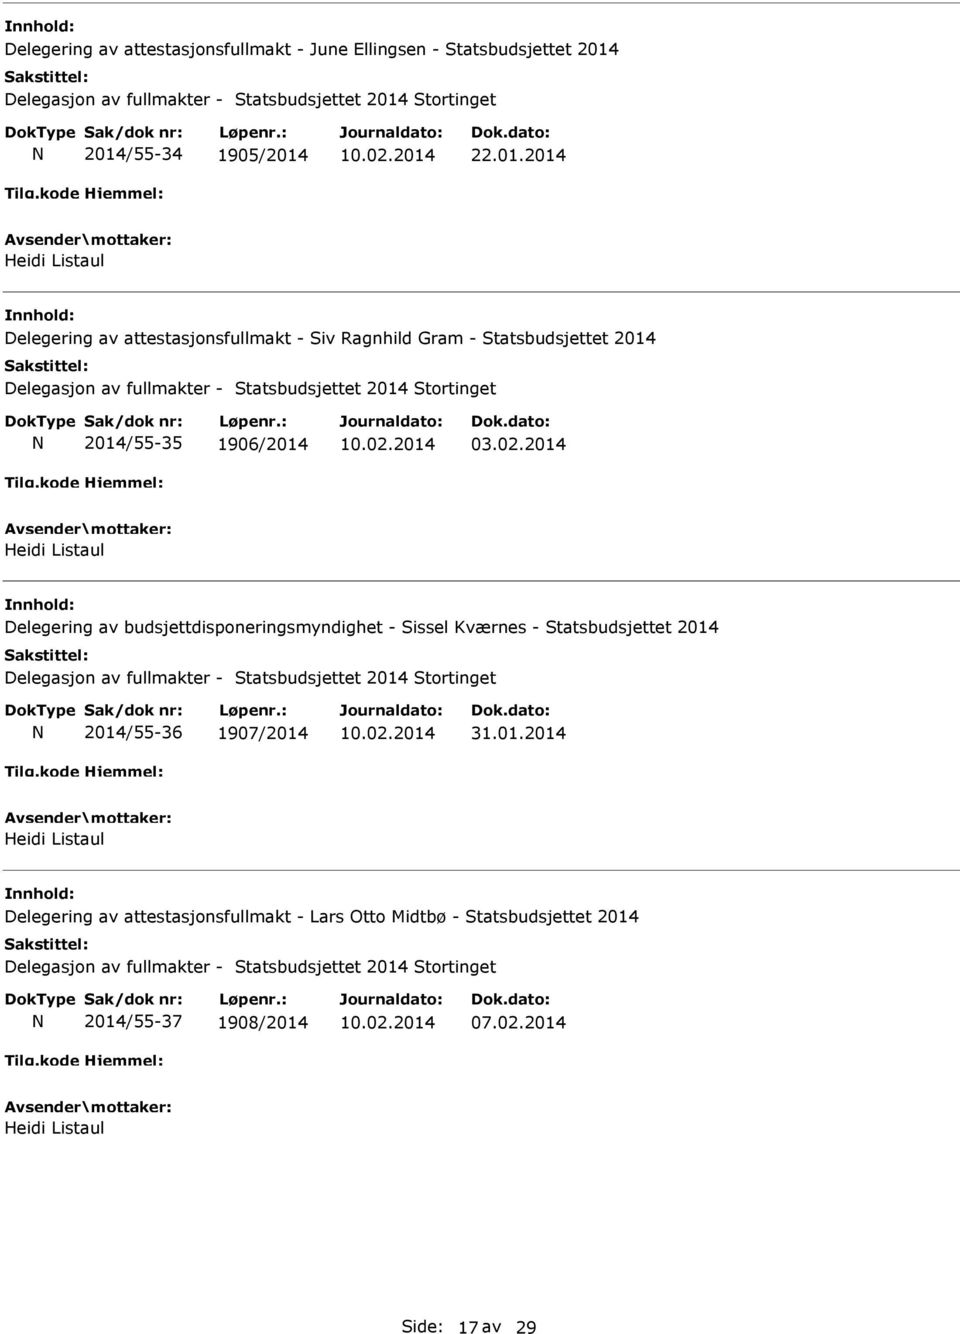 02.2014 Delegering av budsjettdisponeringsmyndighet - Sissel Kværnes - Statsbudsjettet 2014 2014/55-36